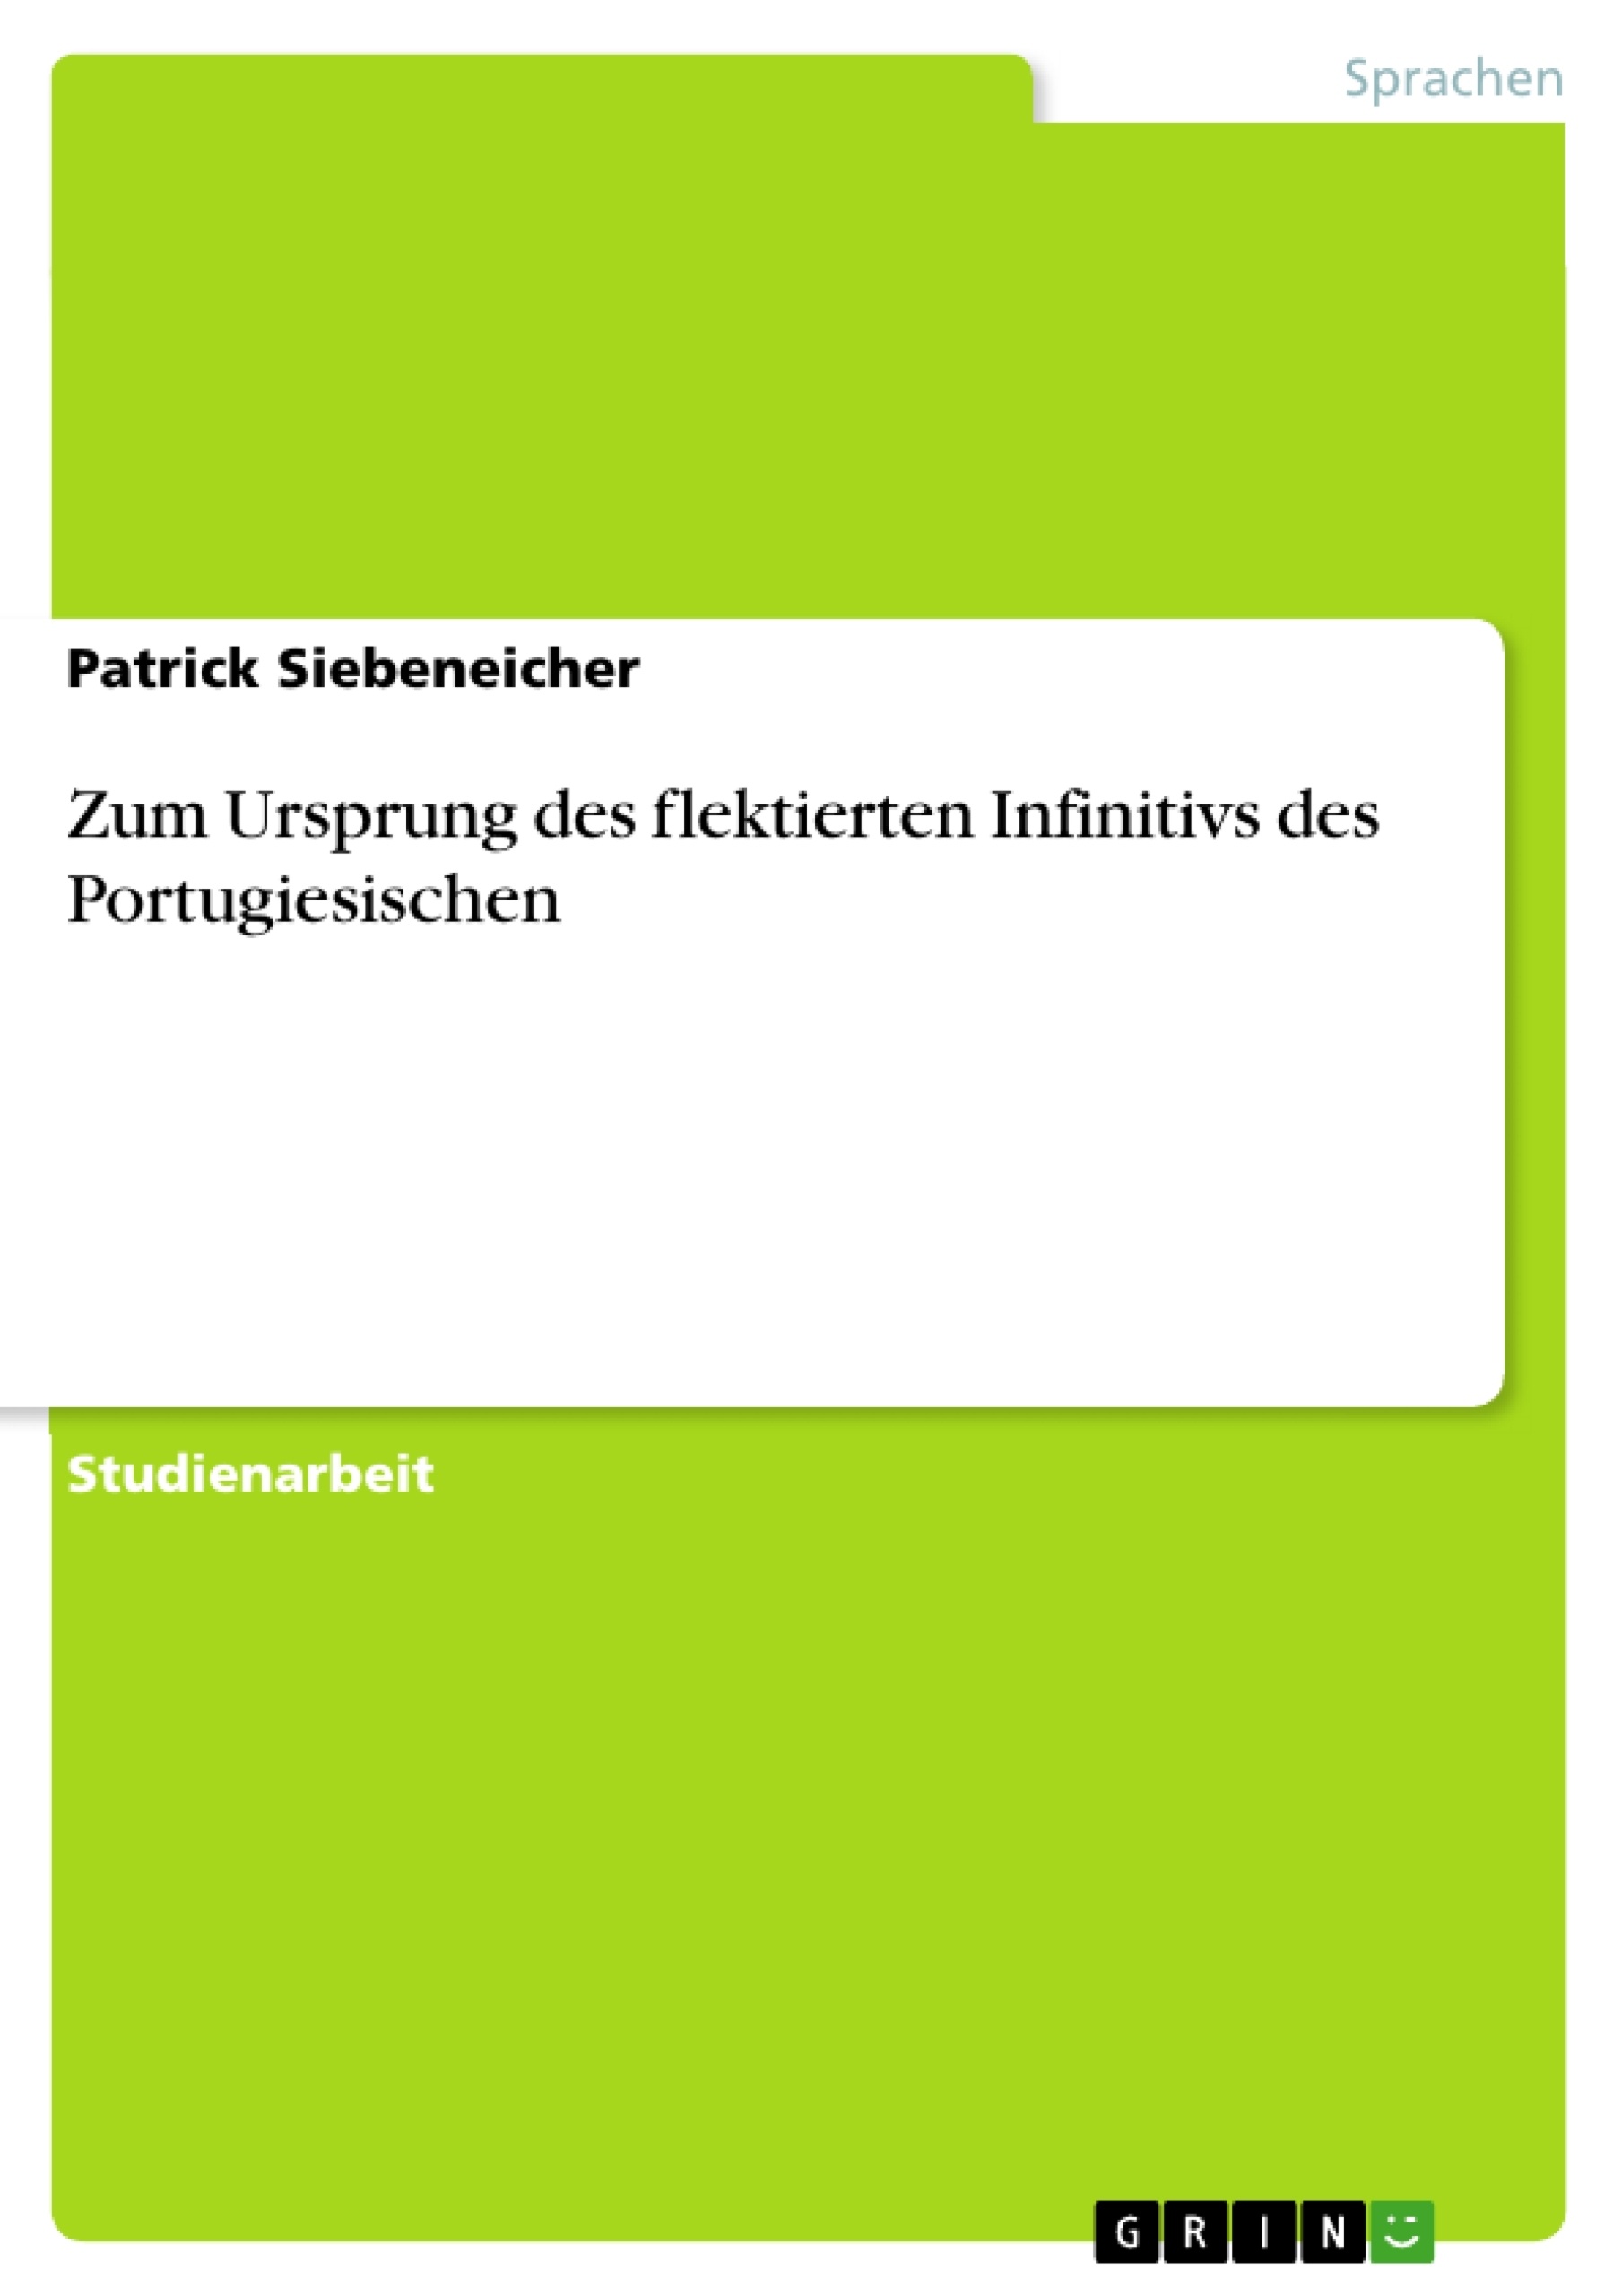 Title: Zum Ursprung des flektierten Infinitivs des Portugiesischen